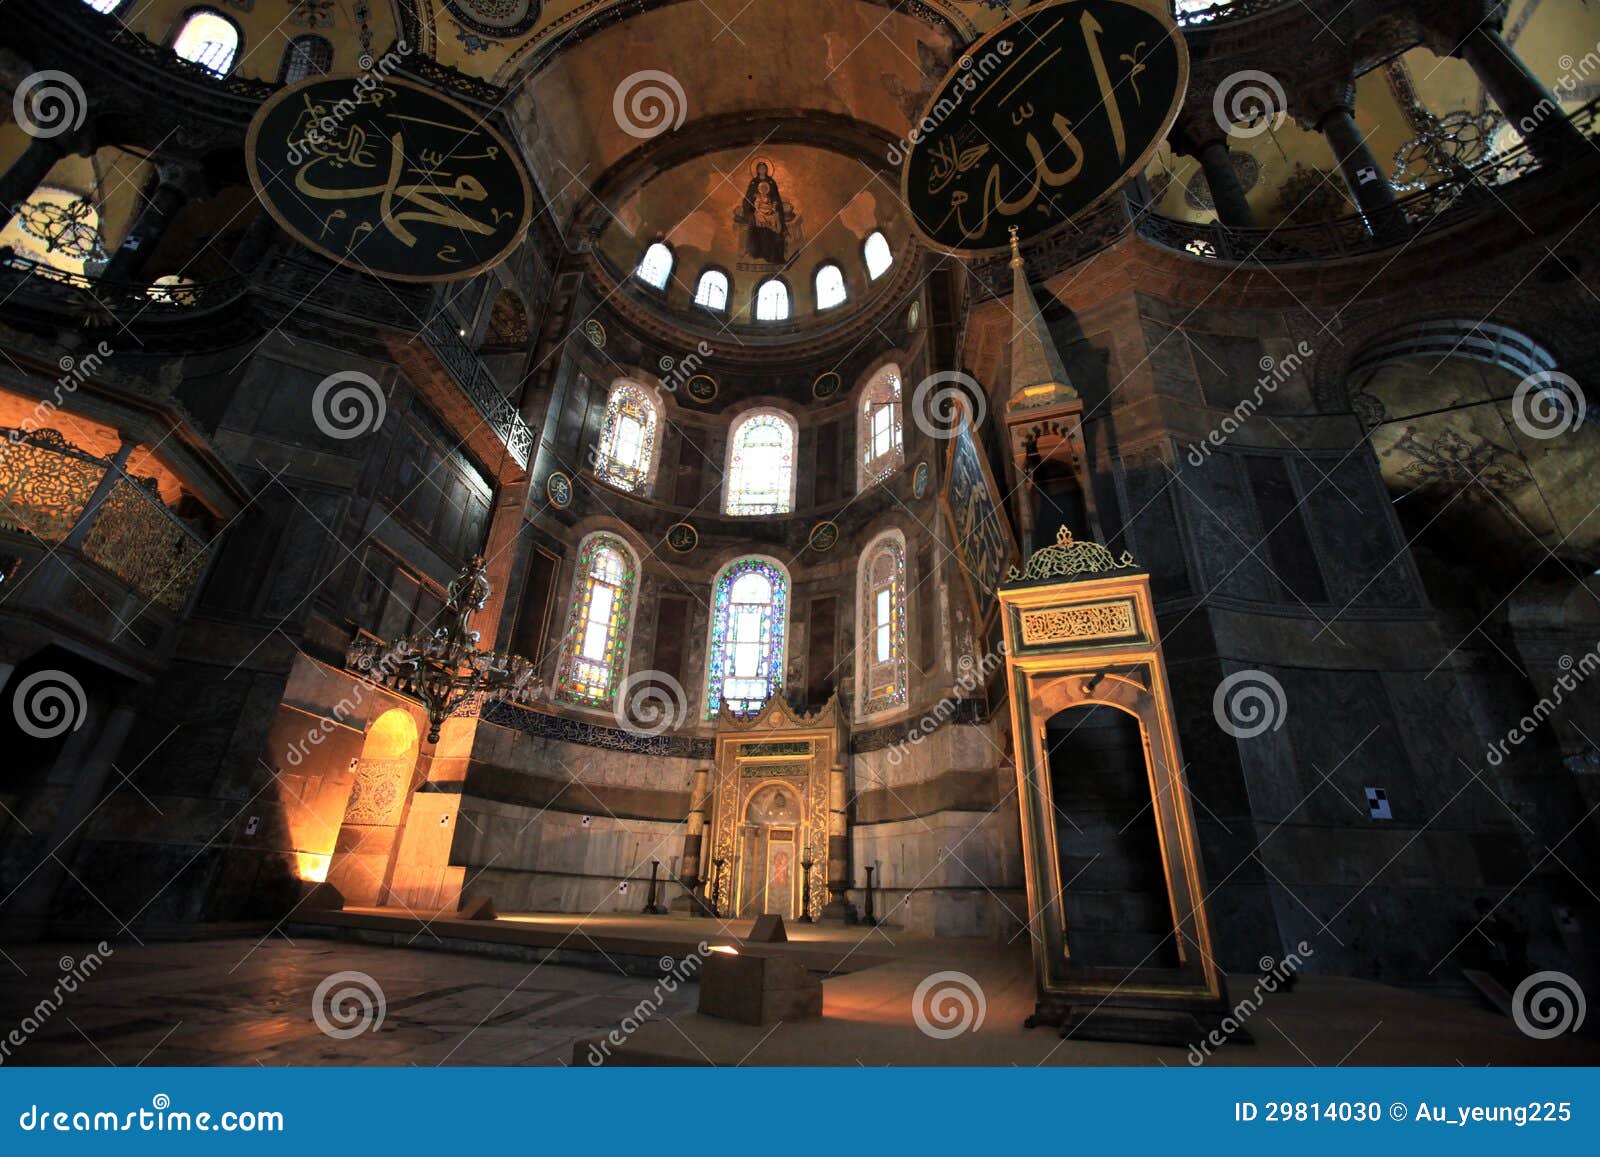 hagia sopia church, museum, travel istanbul turkey